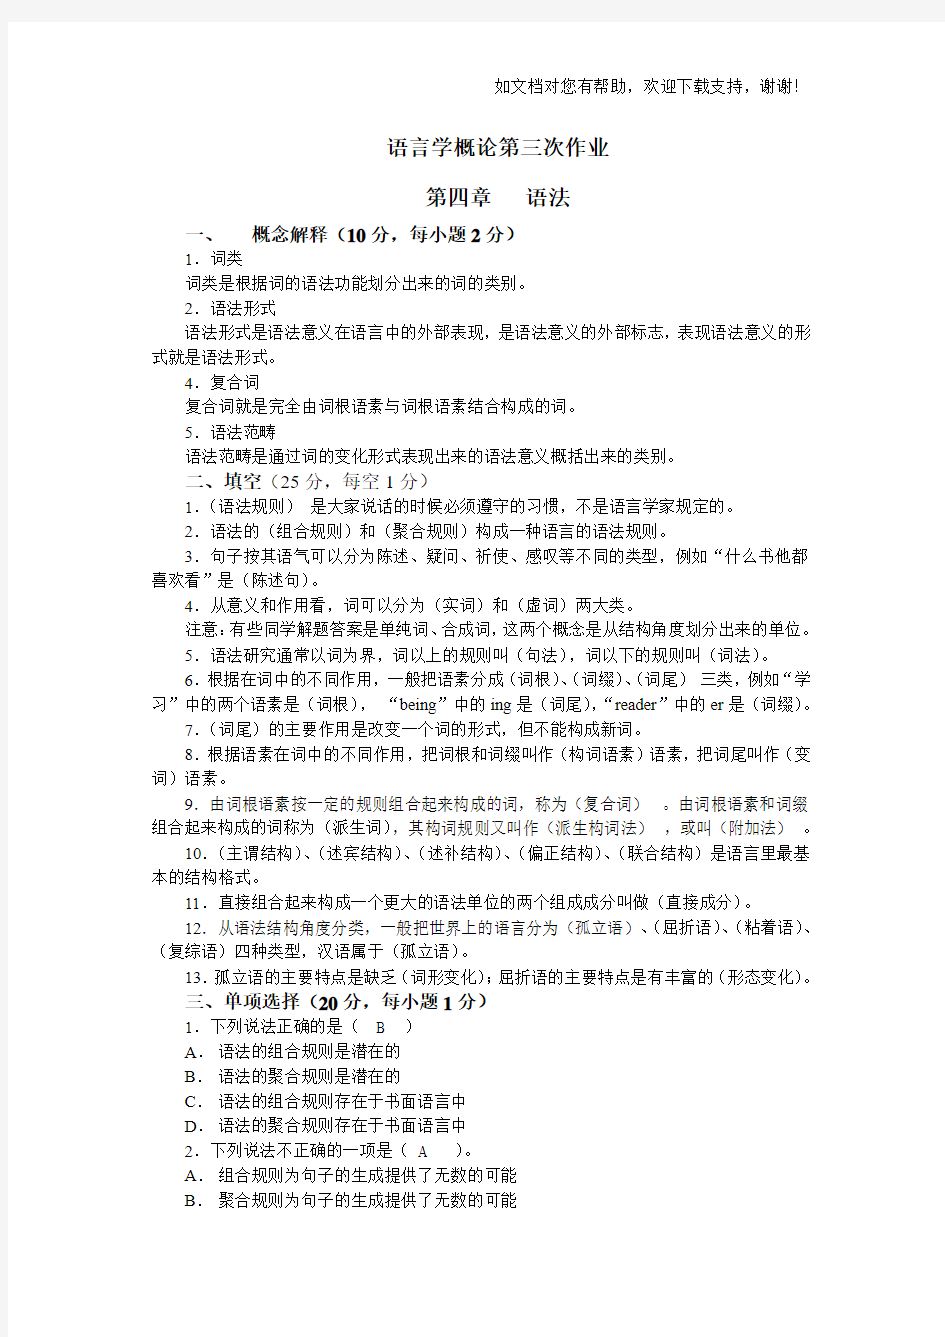 现代汉语及语言学概论(132)